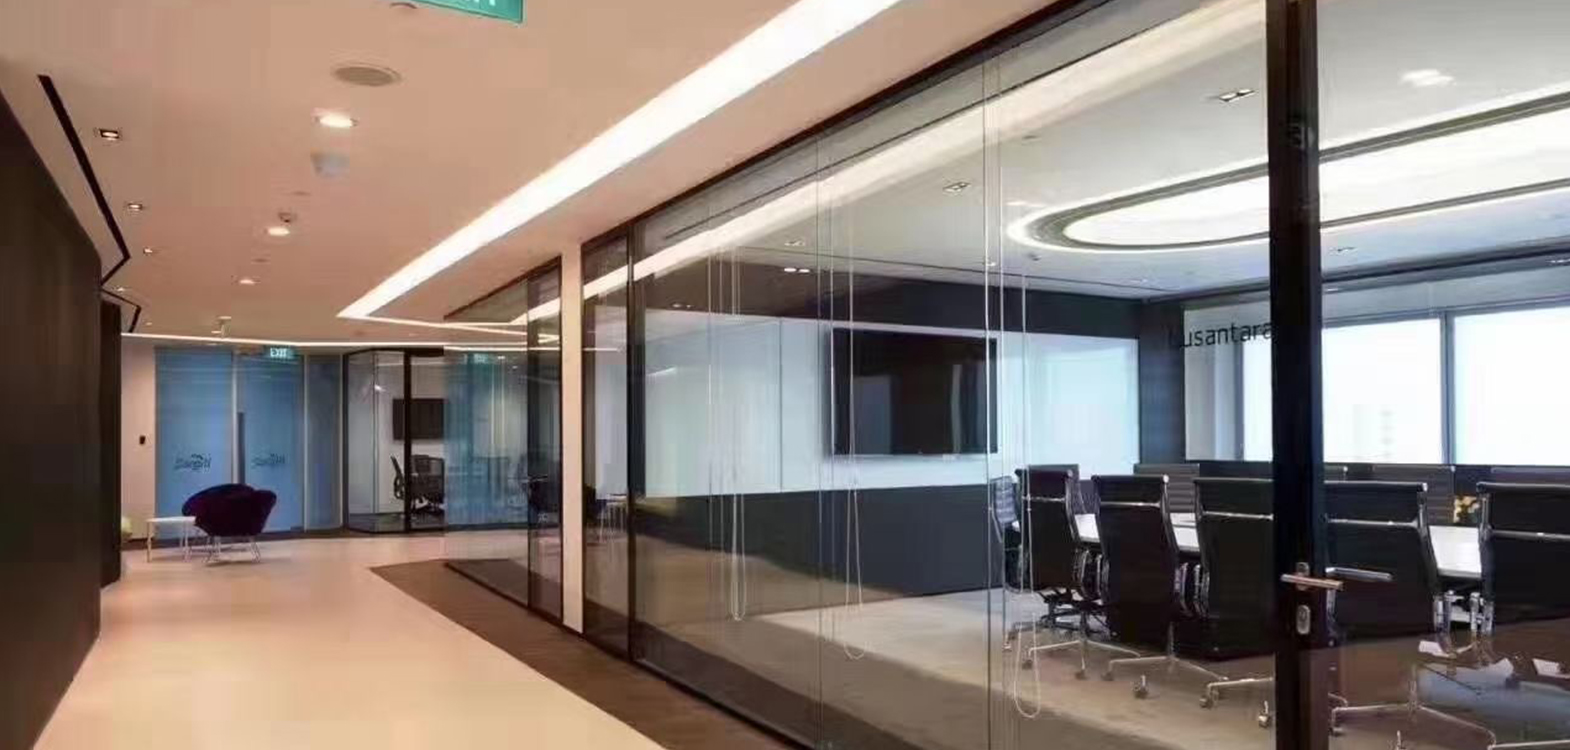 会议室走廊玻璃隔断墙